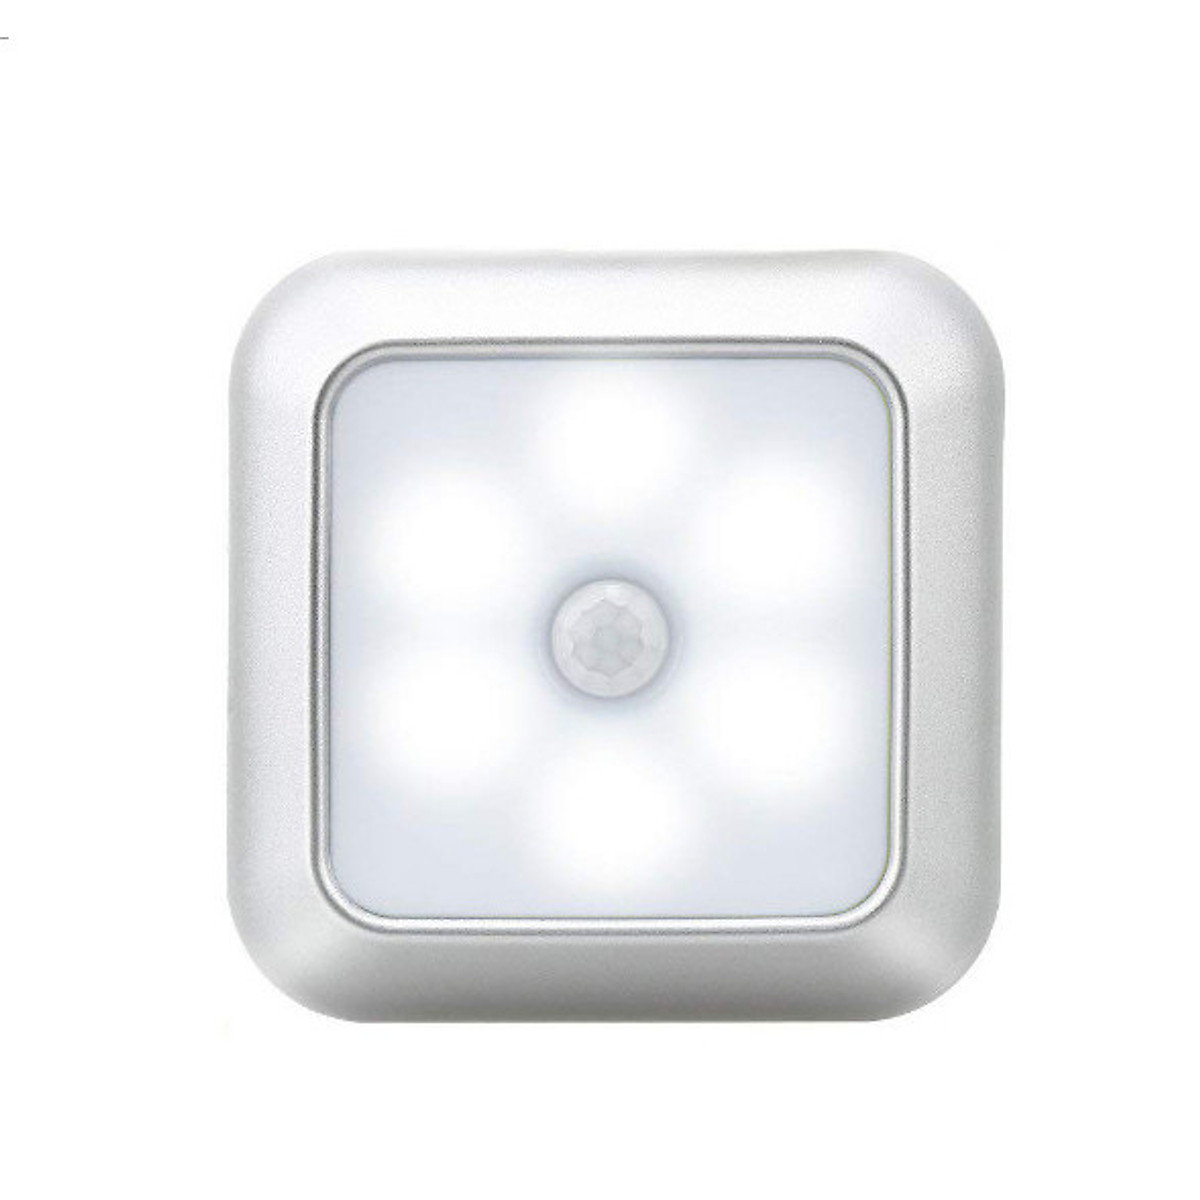 Đèn cảm ứng chuyển động hồng ngoại HV-01 sản phẩm không thể thiếu cho ngôi nhà thông minh của bạn